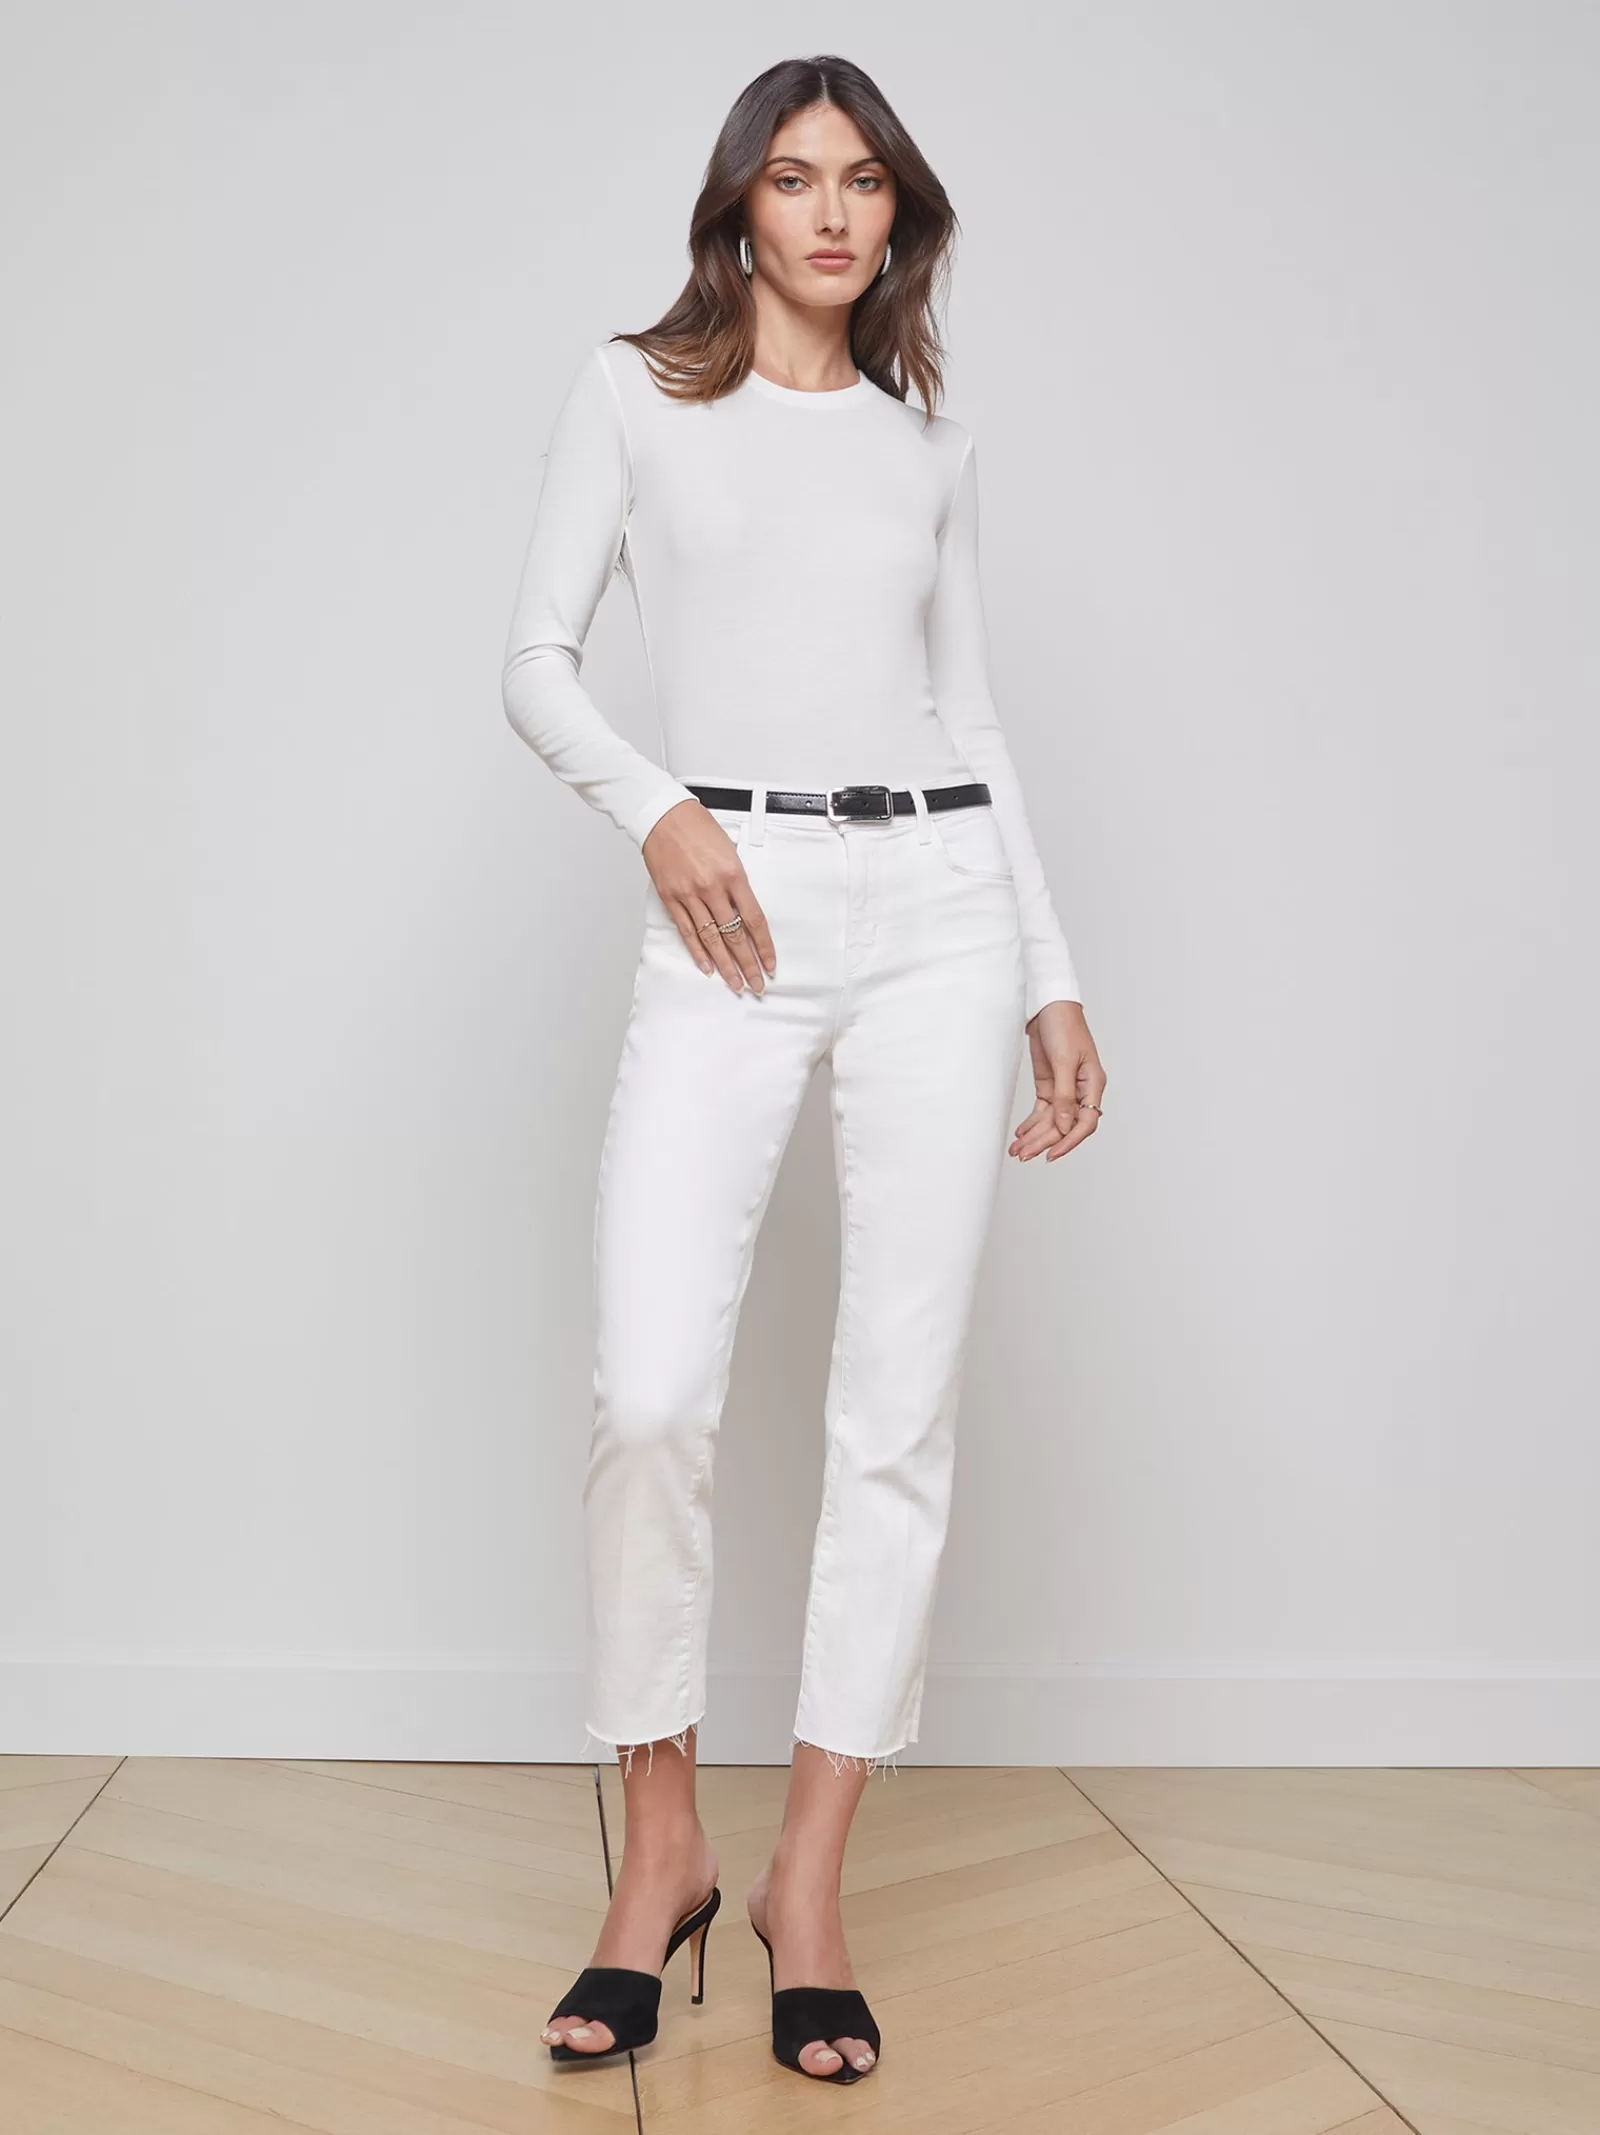 L'AGENCE Sada Slim-Leg Cropped Jean< Nouveau Whites | Petite